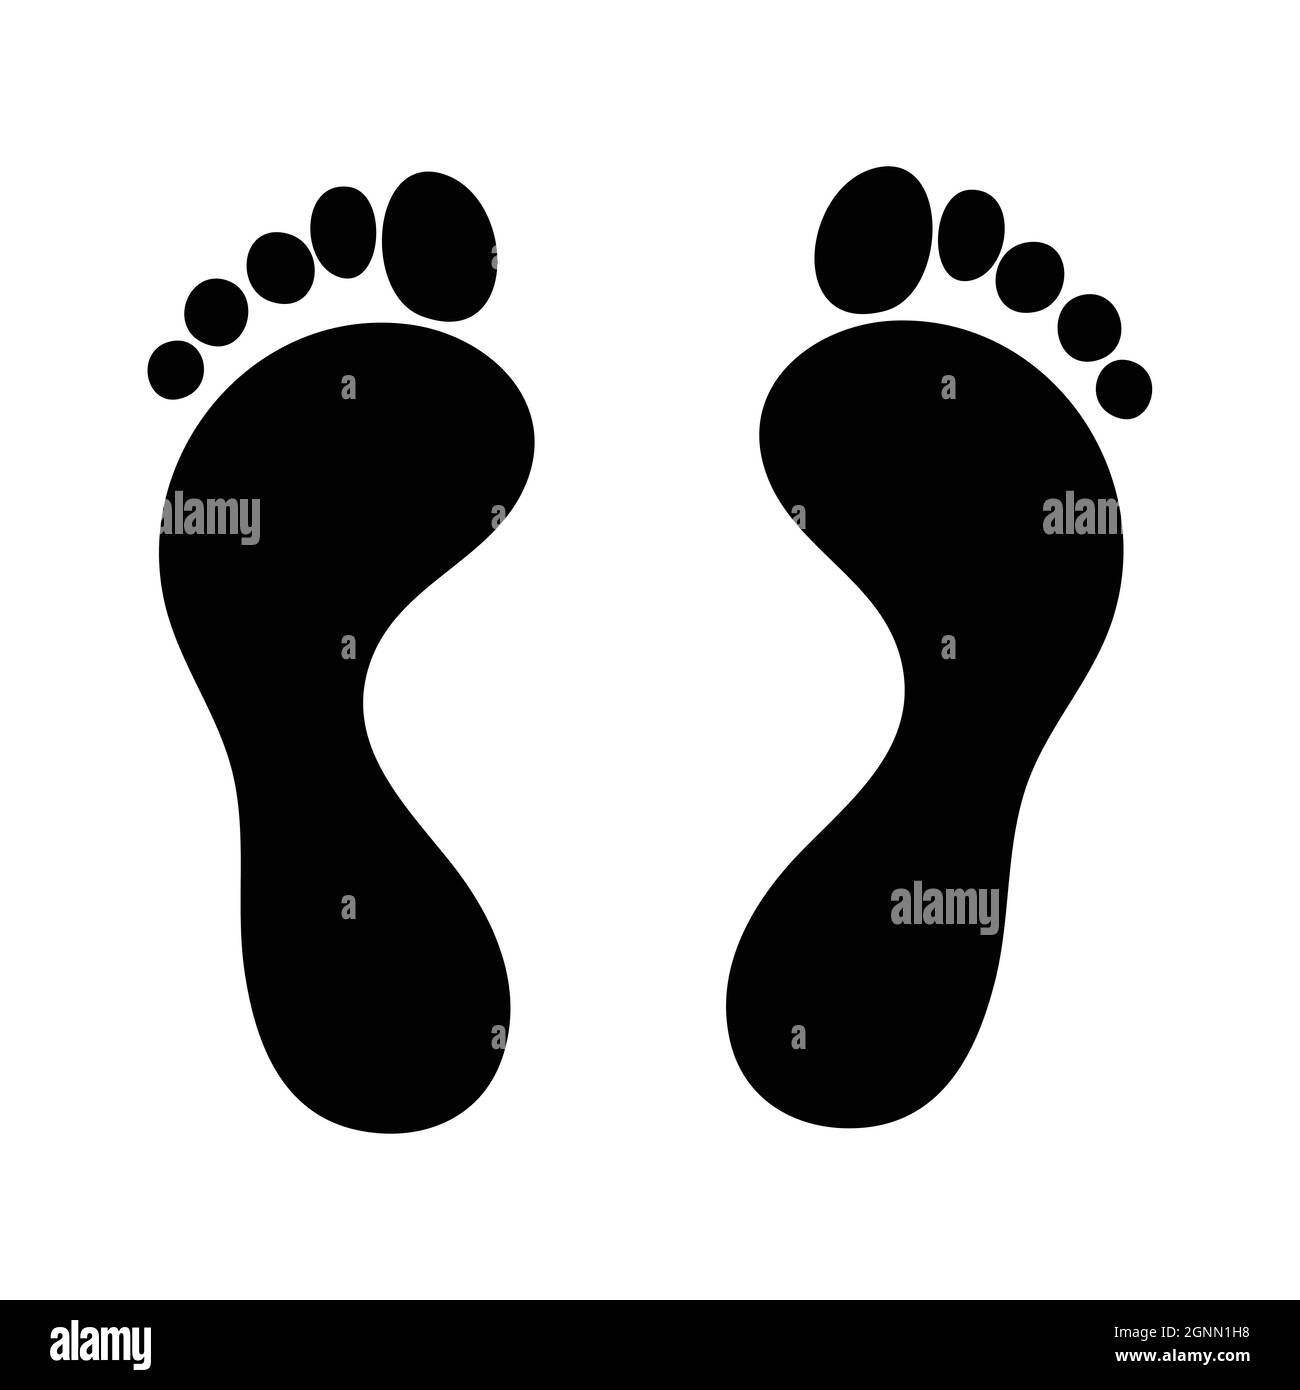 След черная благодарность. След черным по белому. Footprints обувь женская. След черным по белому 2 б.